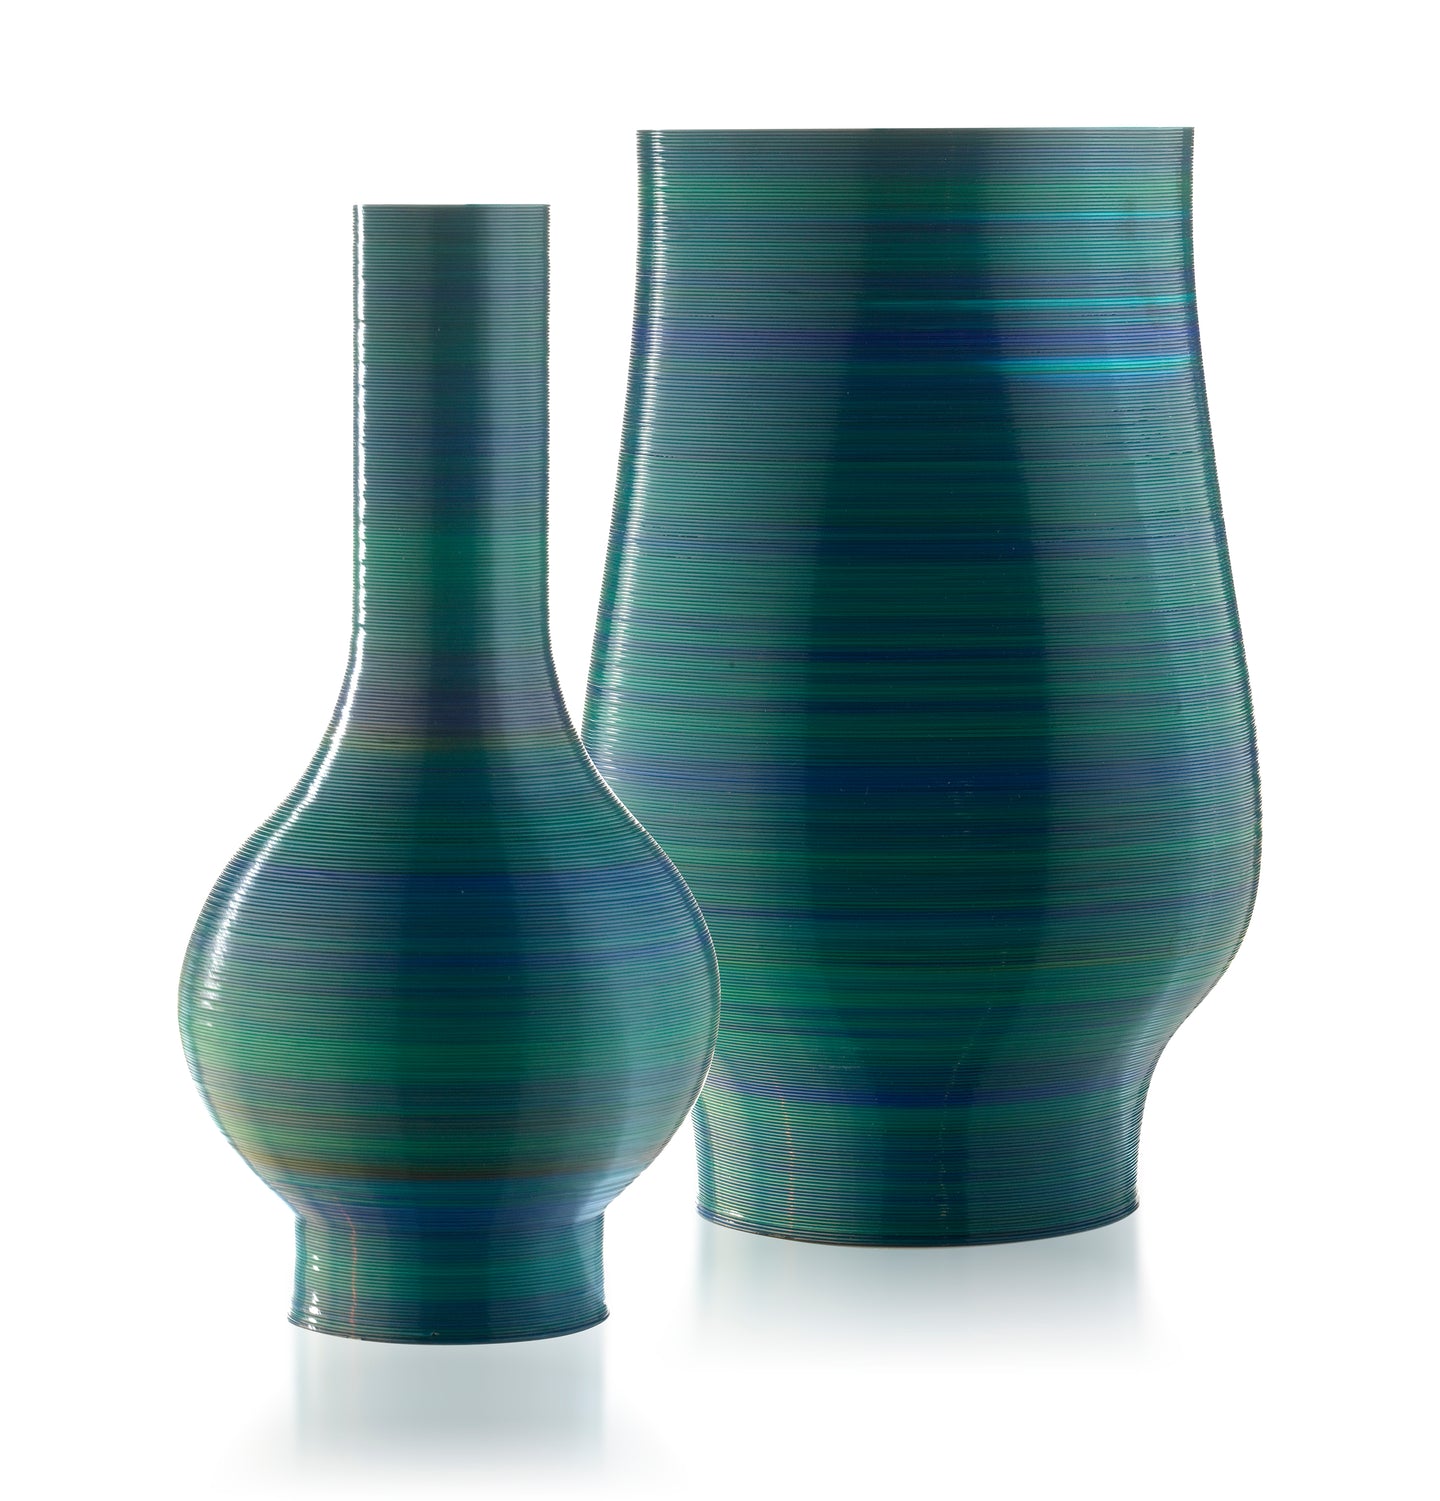 Lisa Tibaldi PRIVERNUM Collection Home Design Vasi in resina di Mais biodegradabili stampati in 3D ecosostenibili